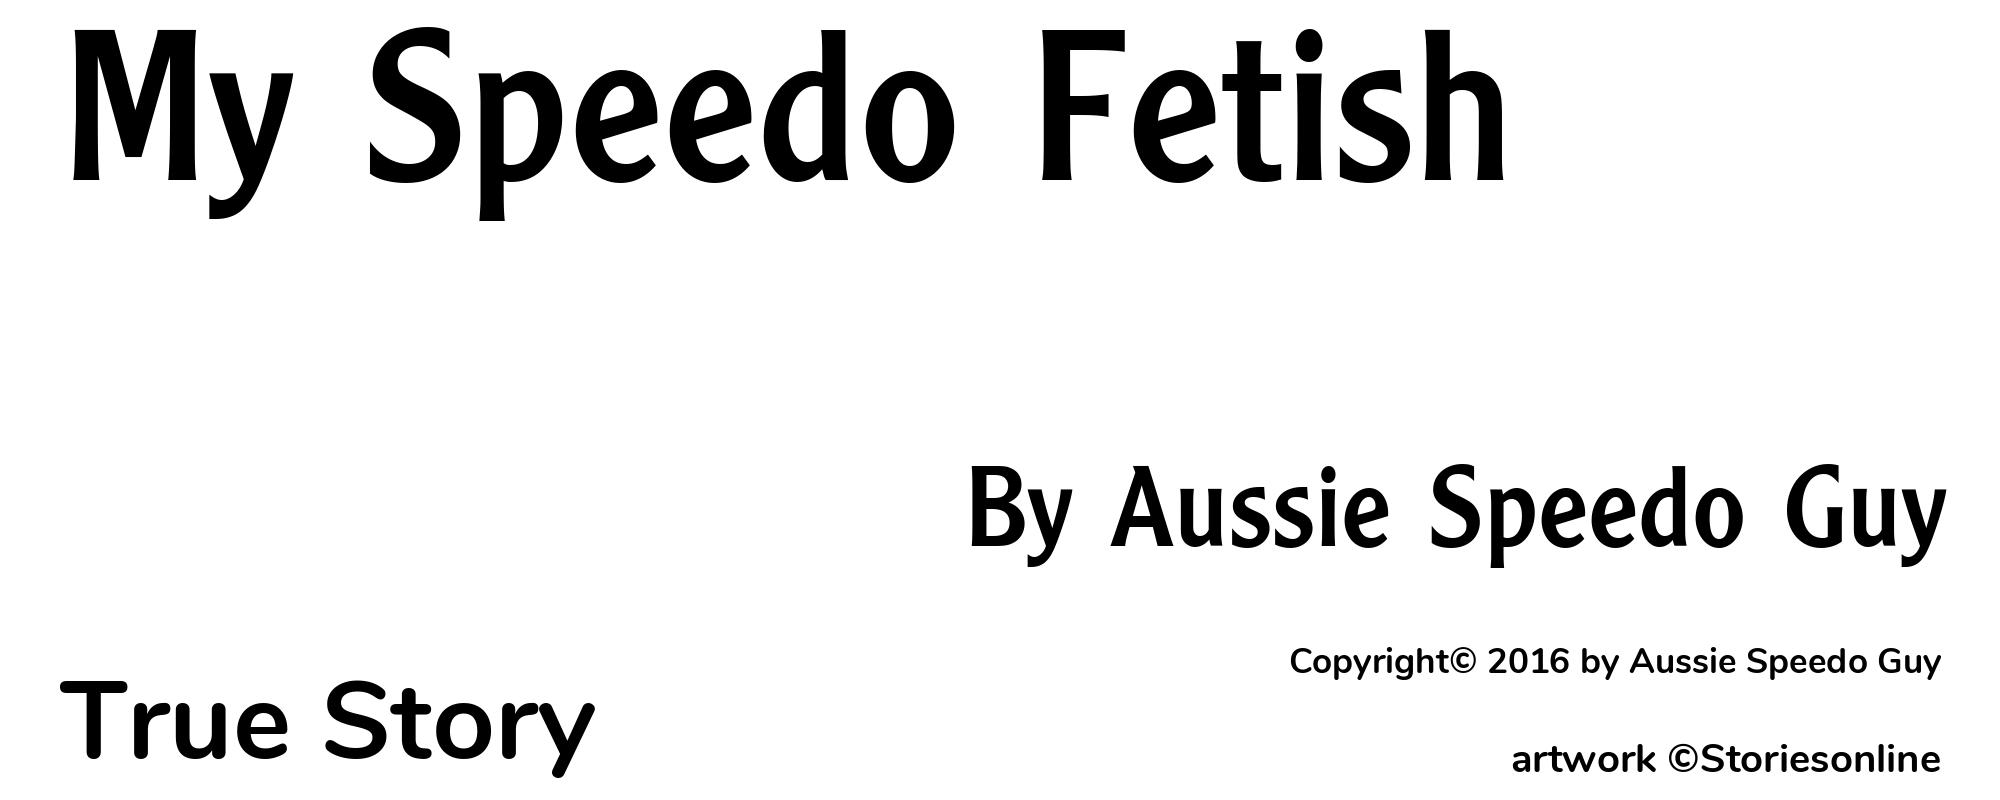 My Speedo Fetish - Cover